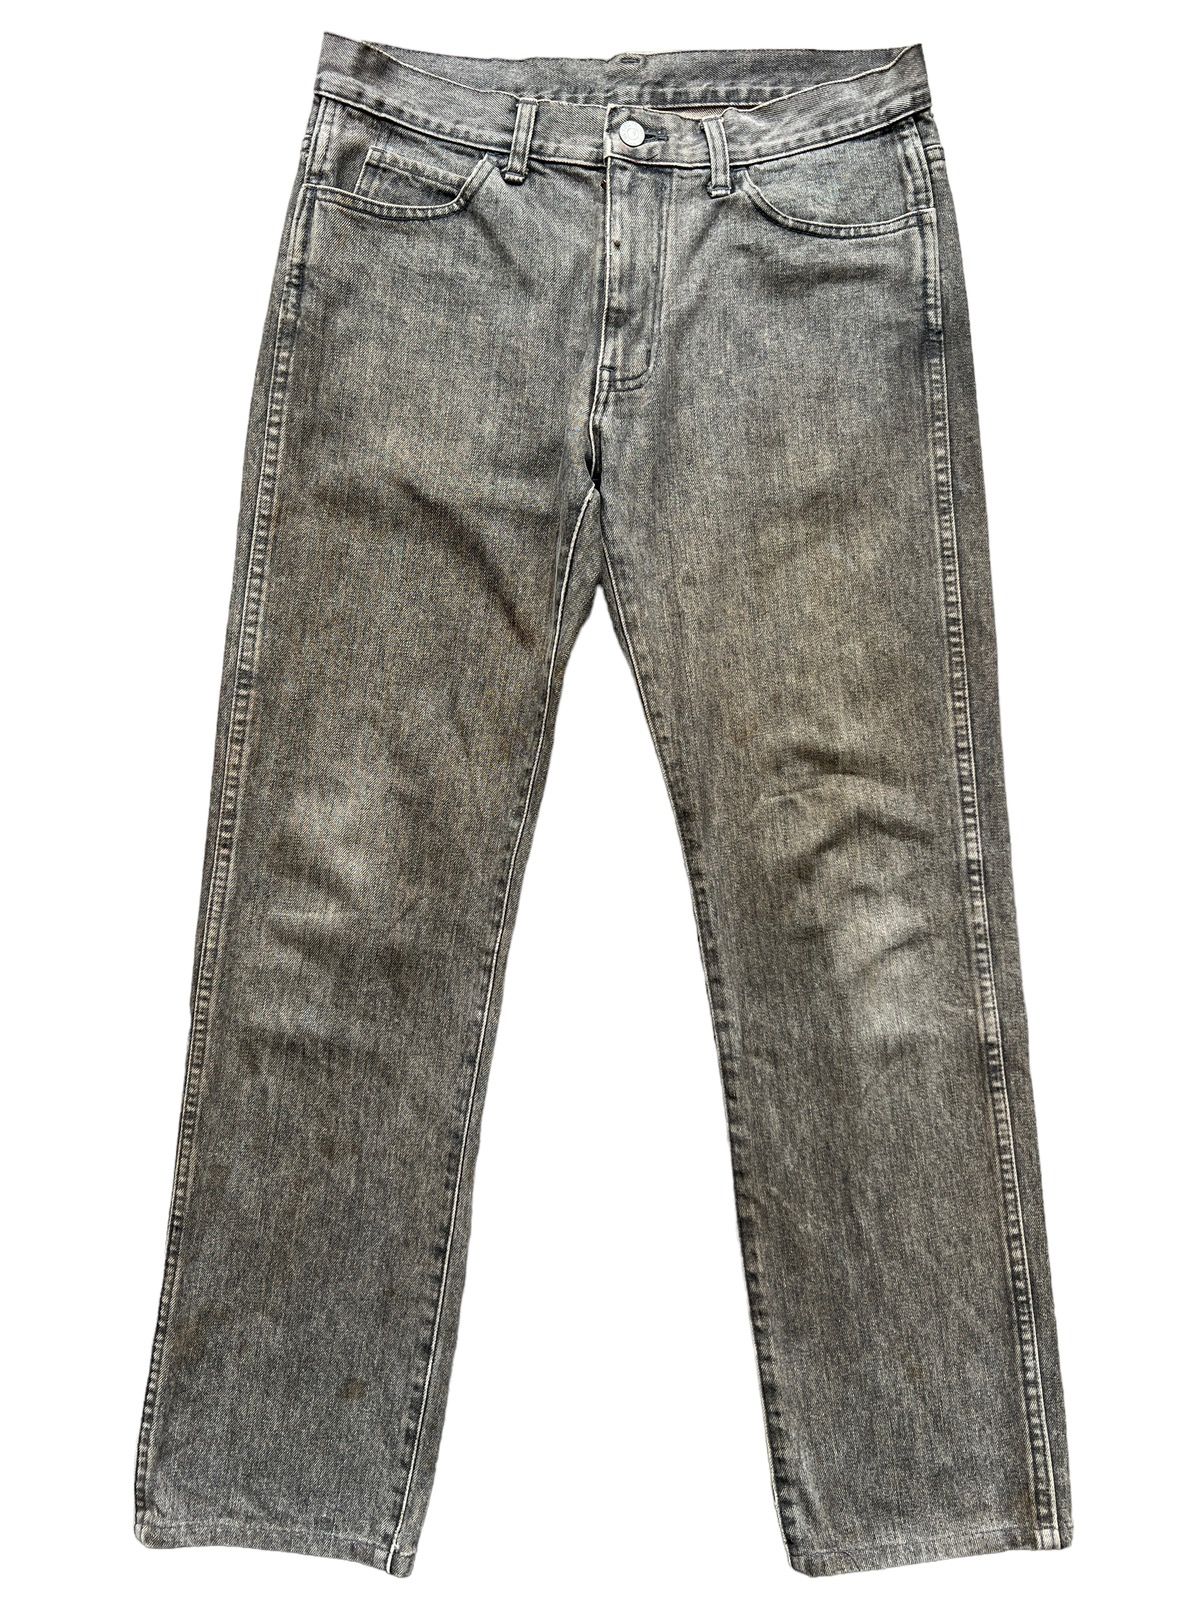 Vintage 90s Beams Skinny Fit Denim Jeans 32x29 - 1